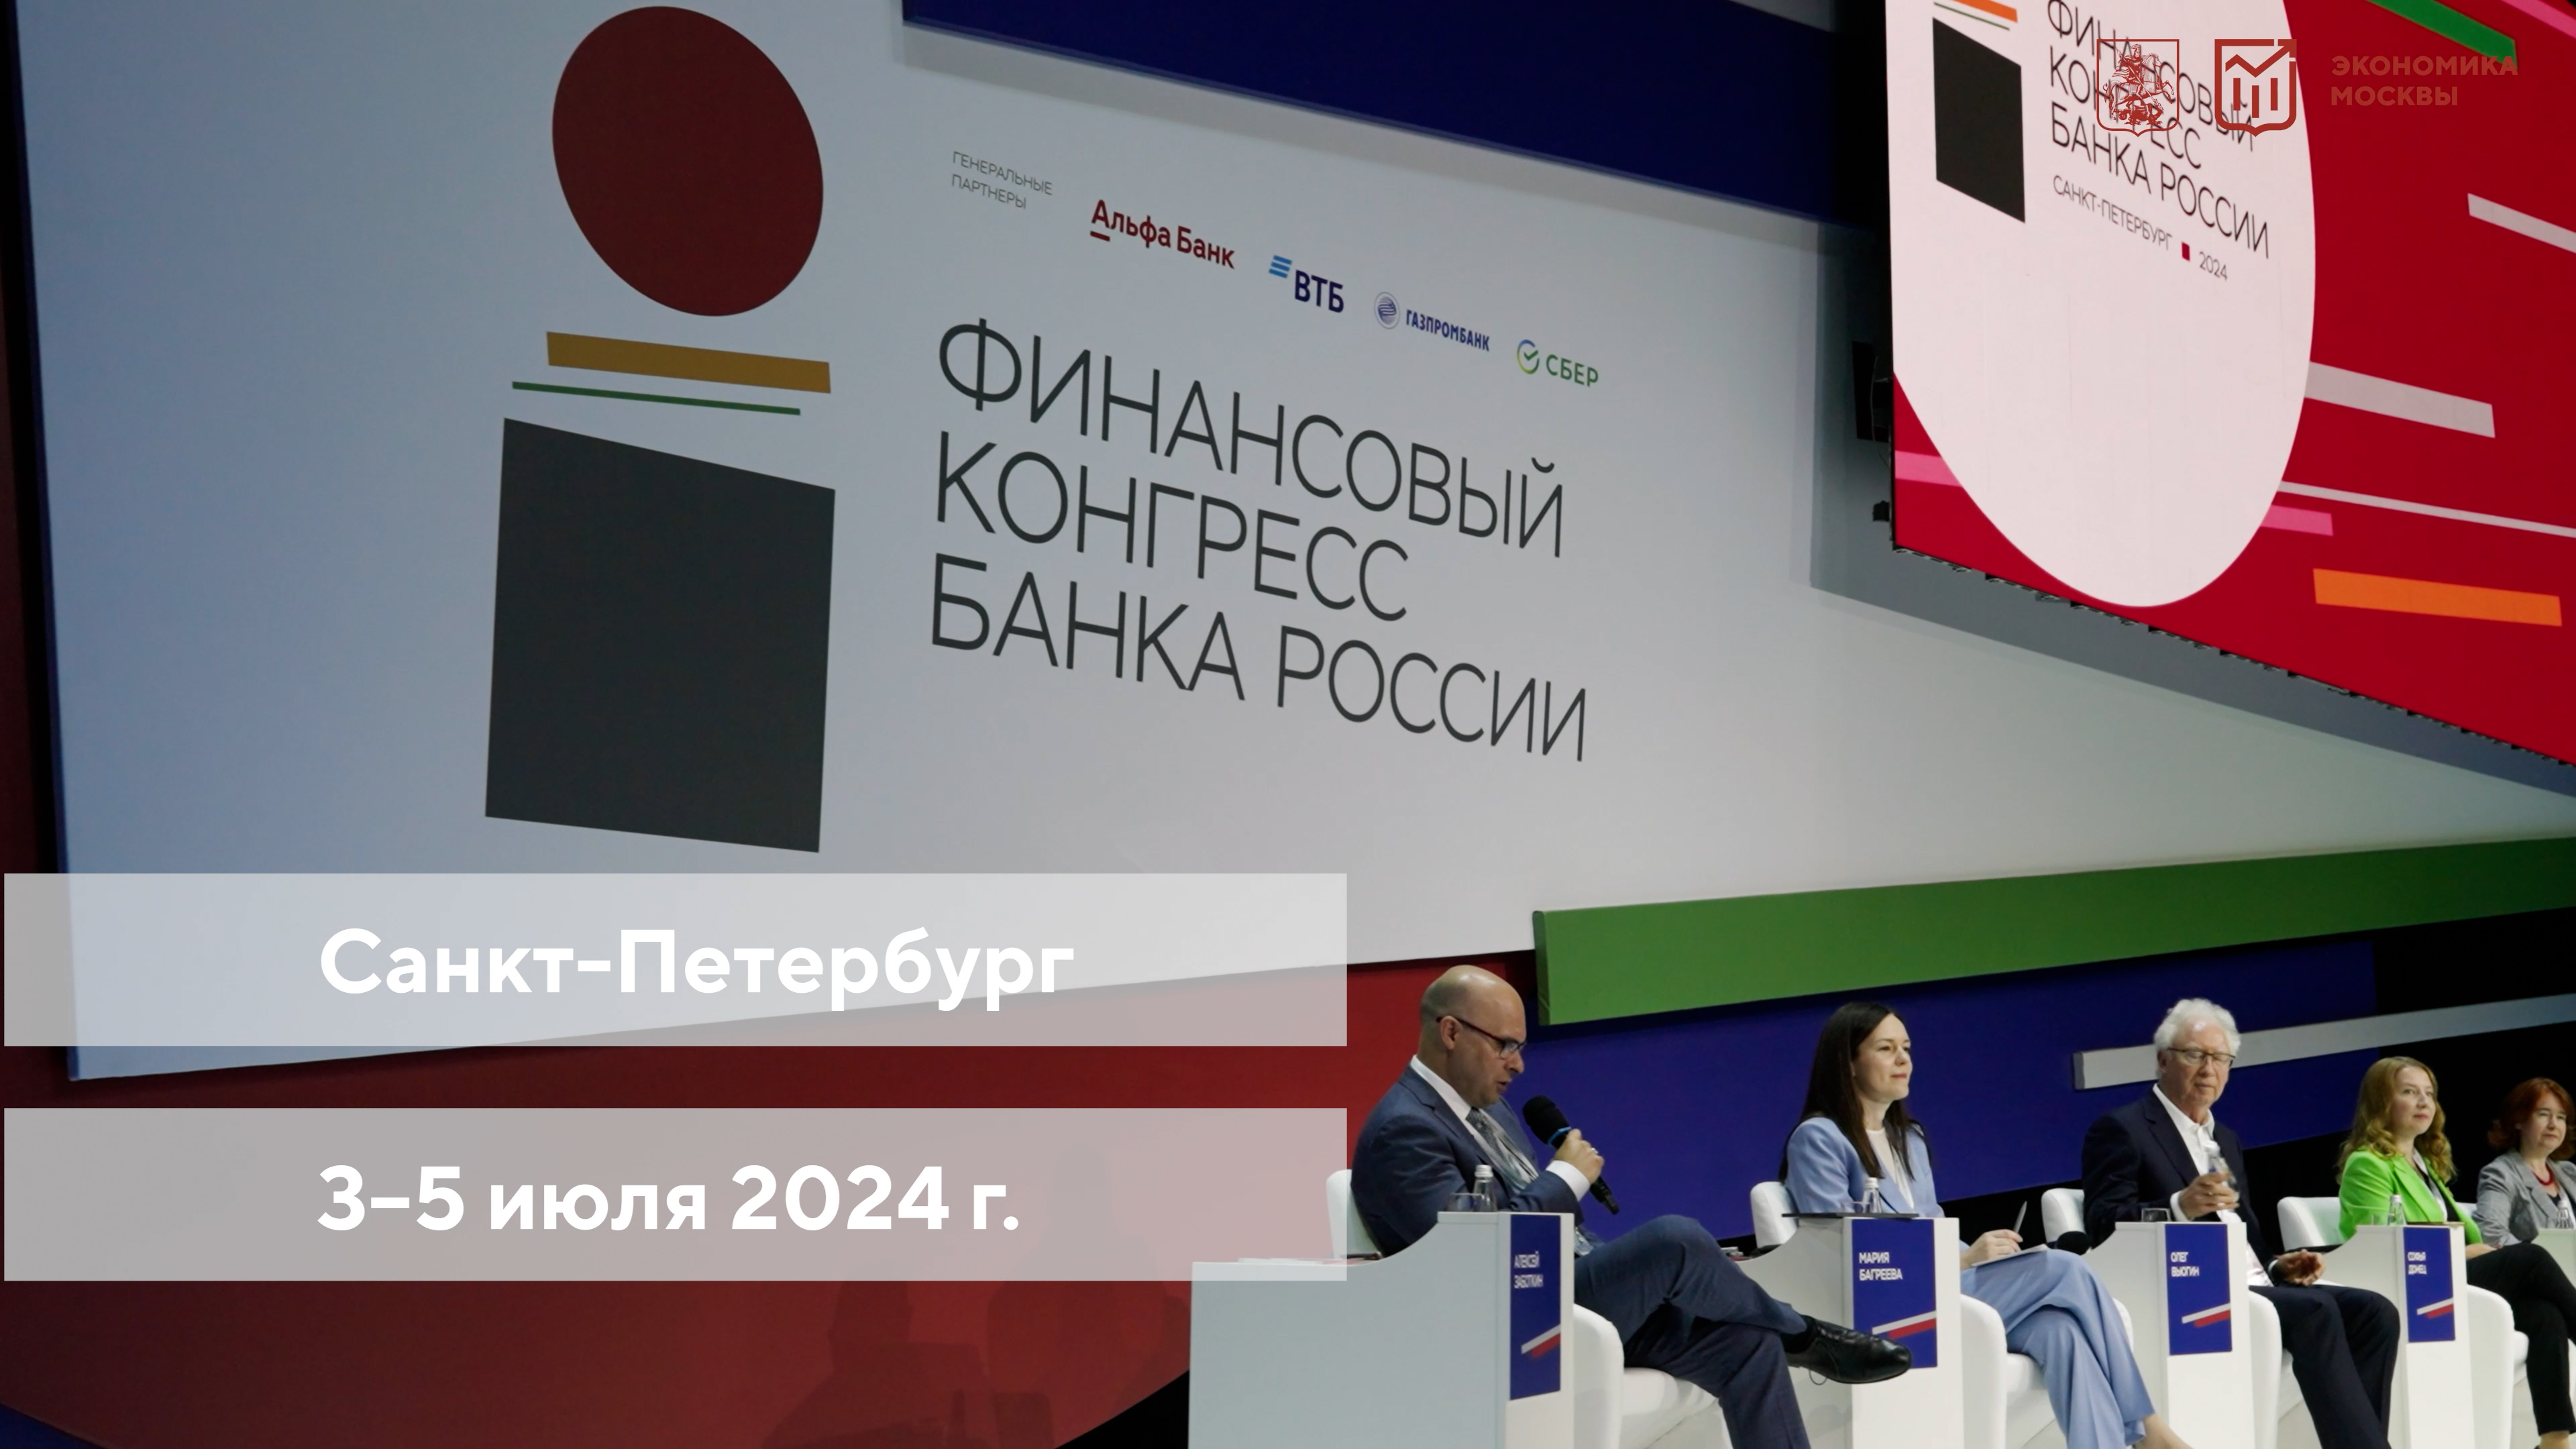 Финансовый конгресс Банка России 2024